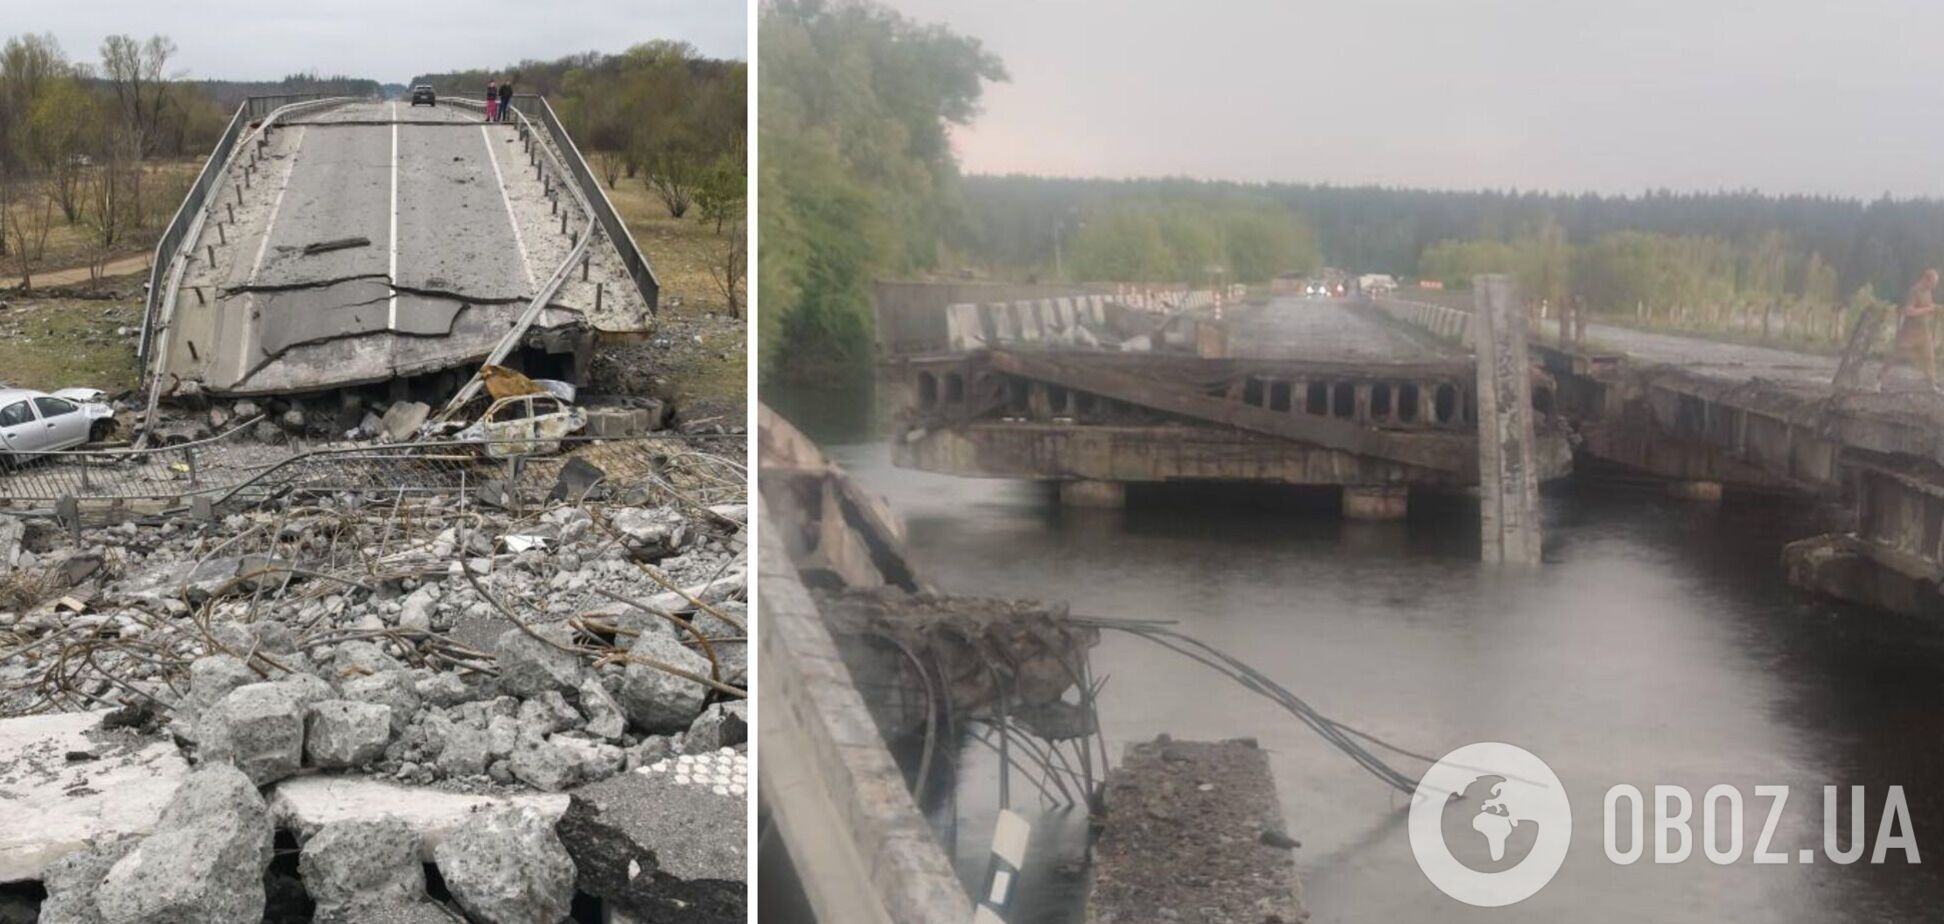 Молния ударила в мост возле села Демидов, прогремел взрыв: есть погибший и двое раненых